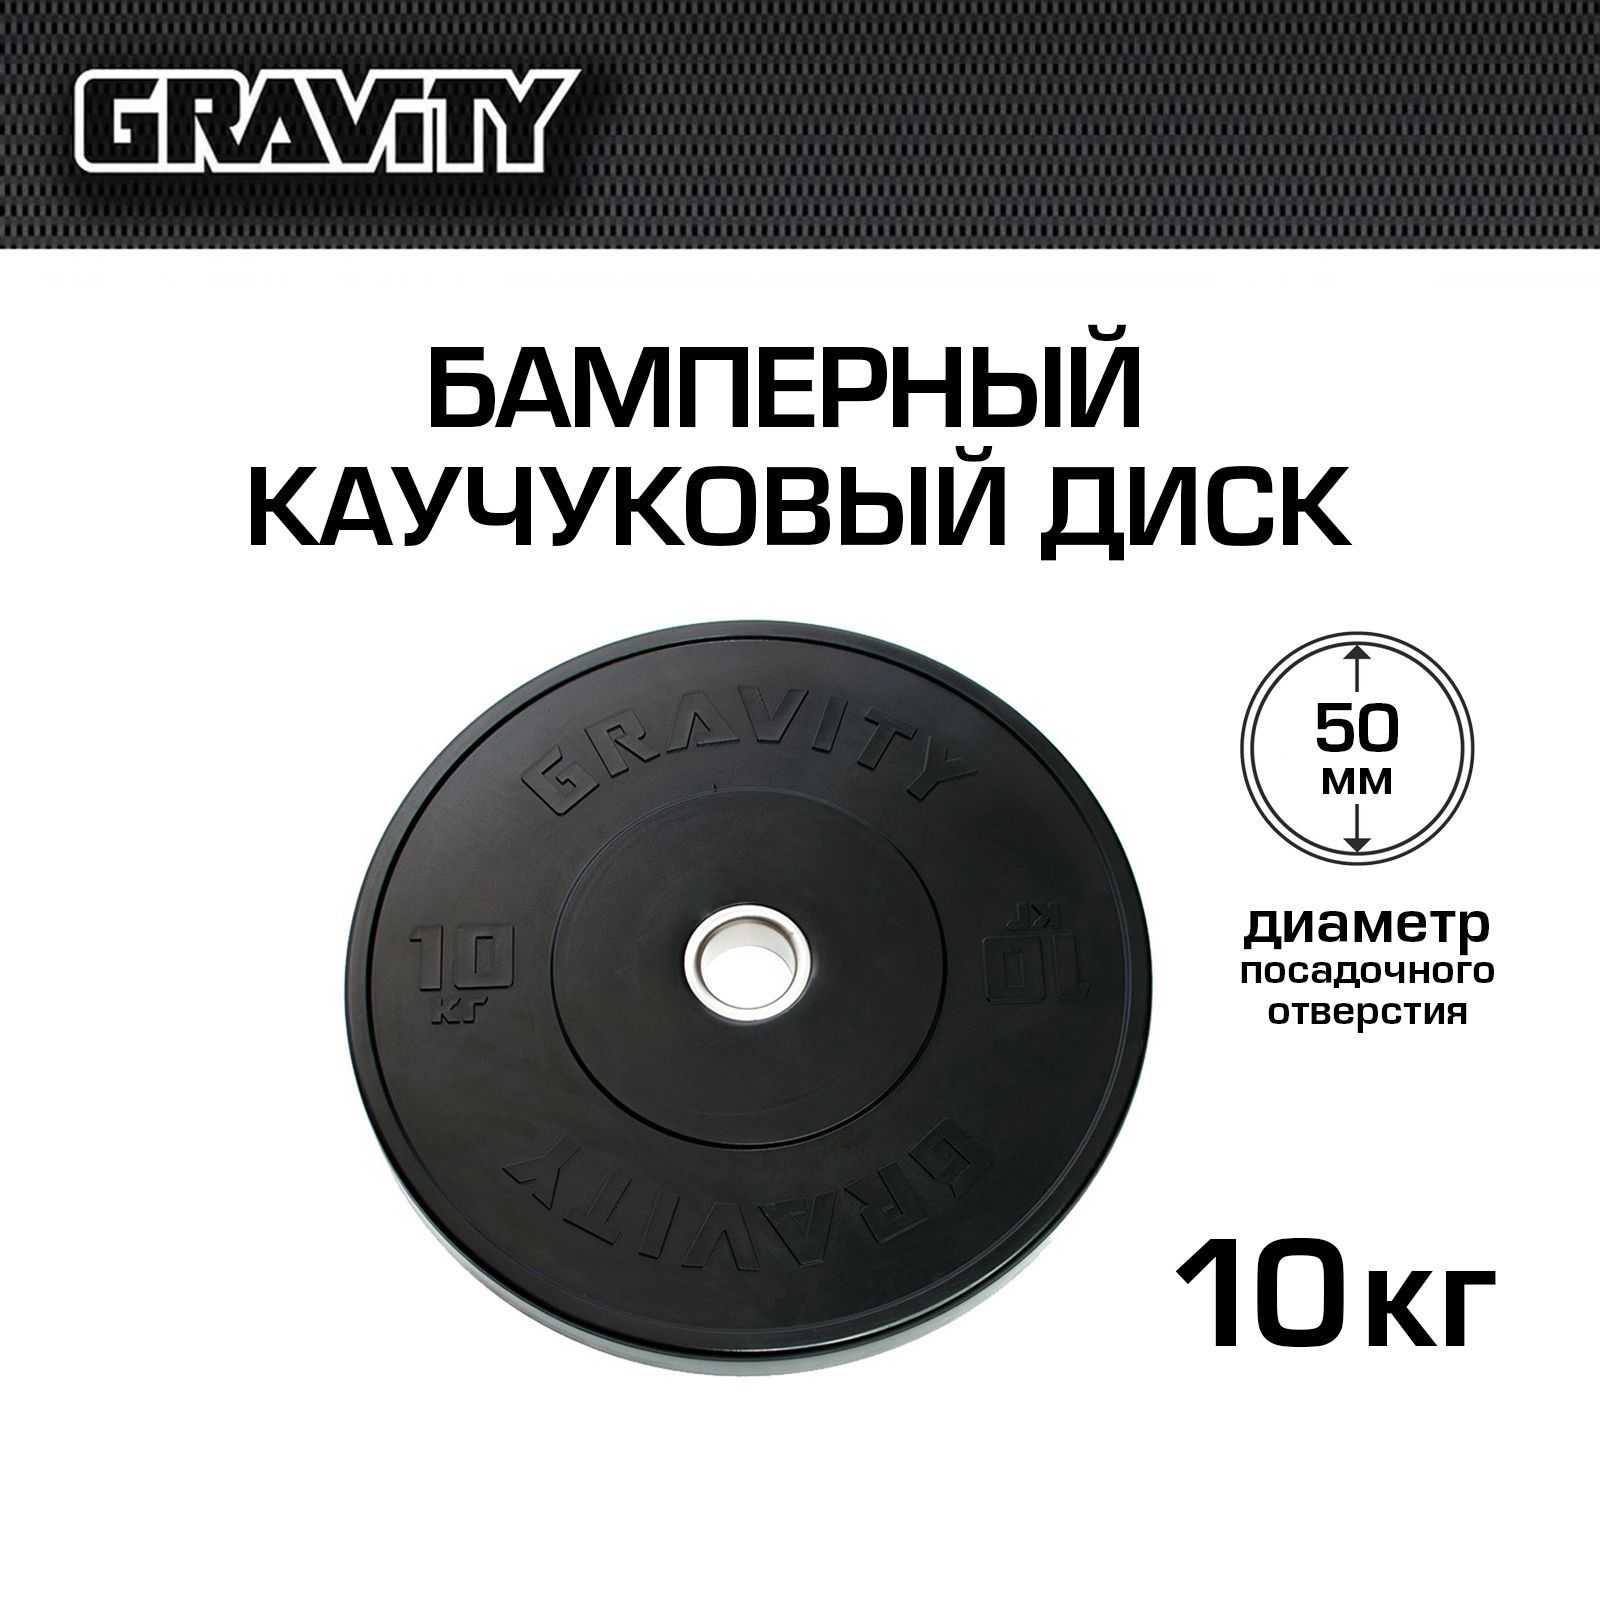 Бамперный каучуковый диск Gravity черный, черный лого, 10 кг